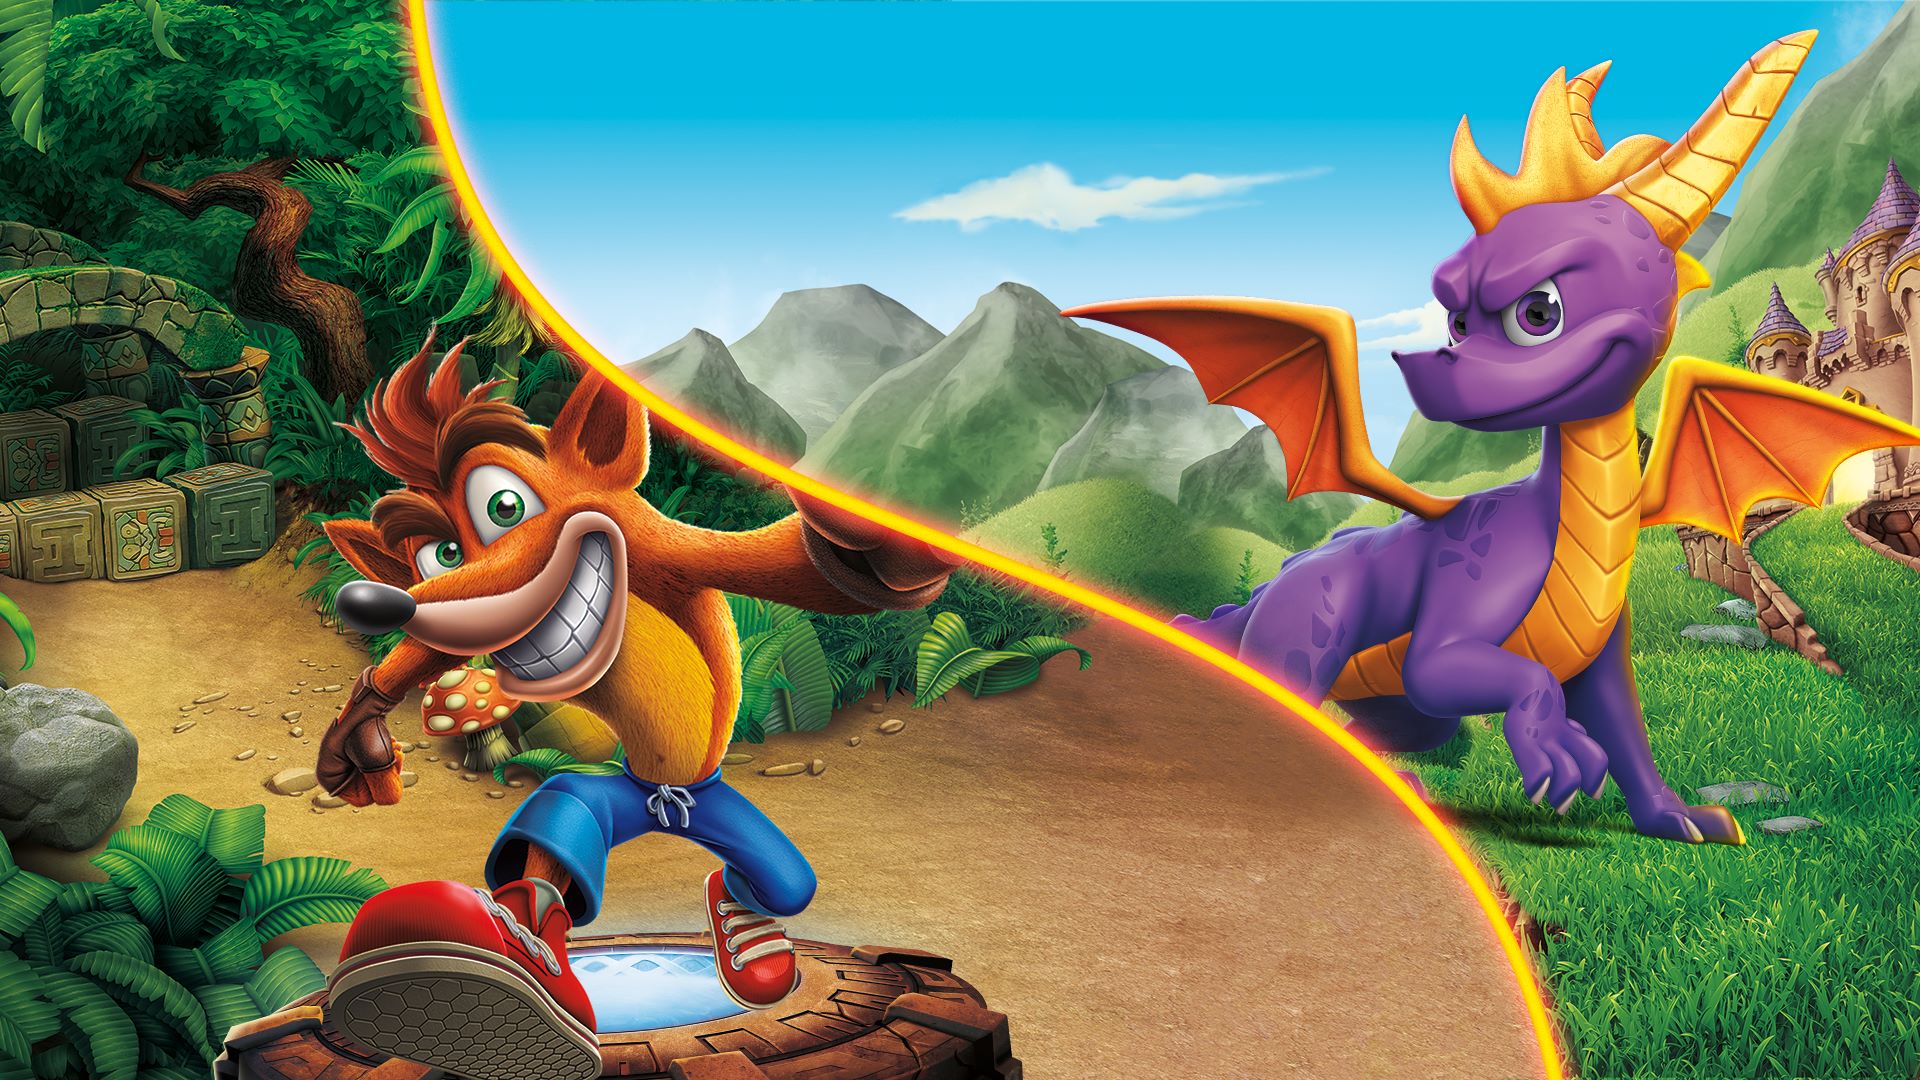 Los proyectos animados de Spyro the dragón y crash bandicoot ya están en producción para la plataforma de Apple TV